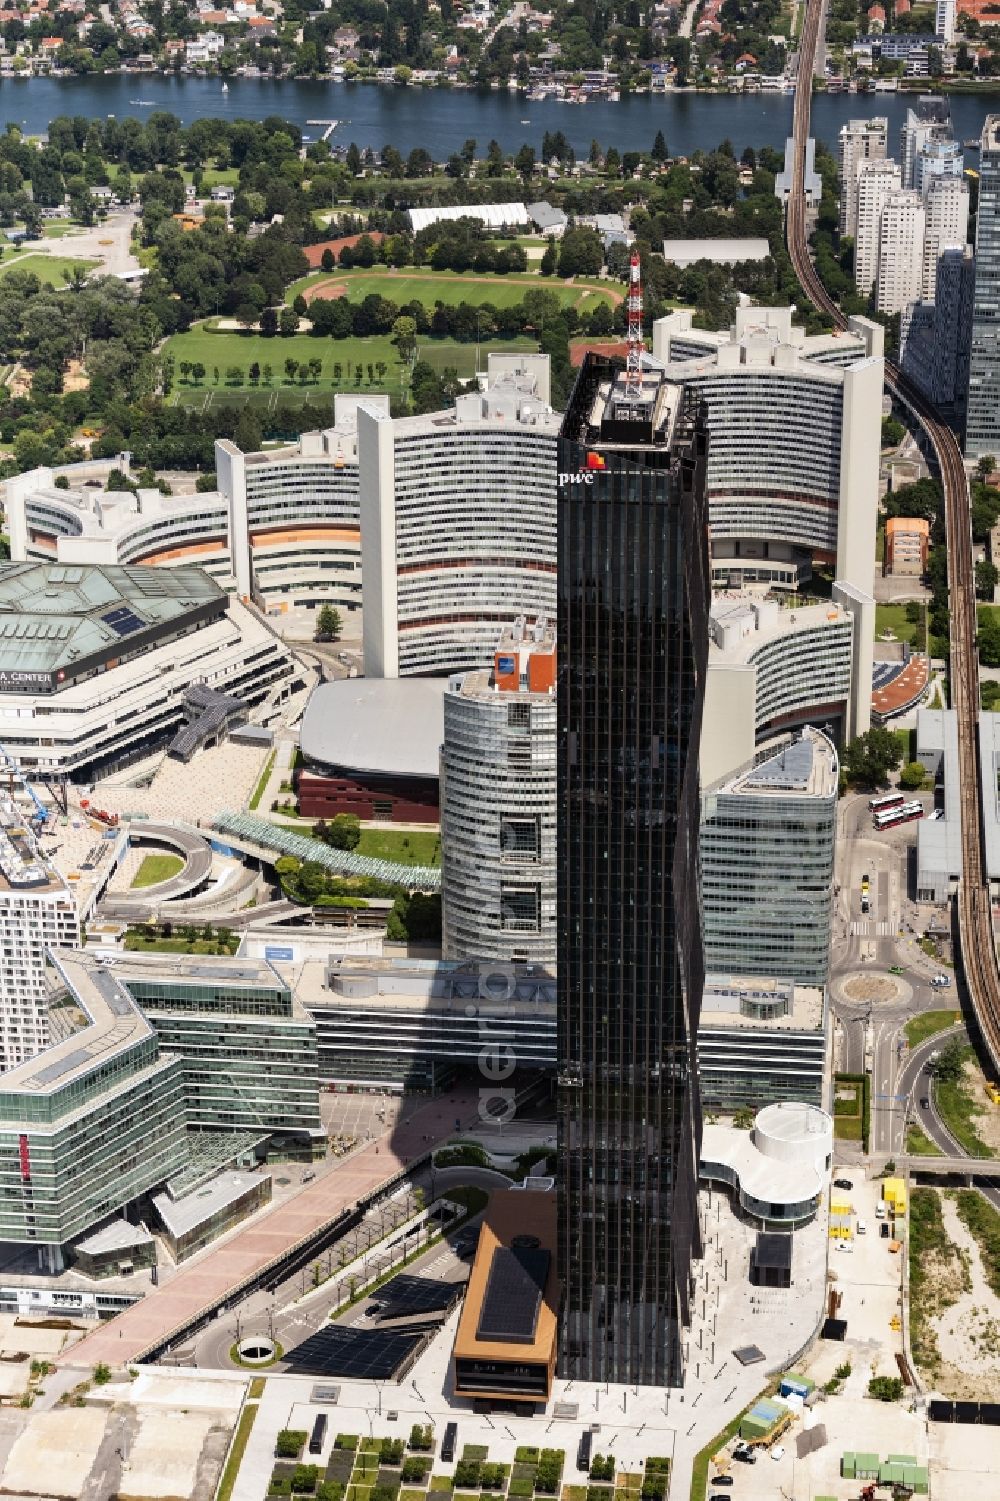 Aerial image Wien - High-rise ensemble of with dem DC Tower von dem Architekten Dominique Perrault in 1996 neu errichteten Stadtteil Donaustadt in Vienna in Austria